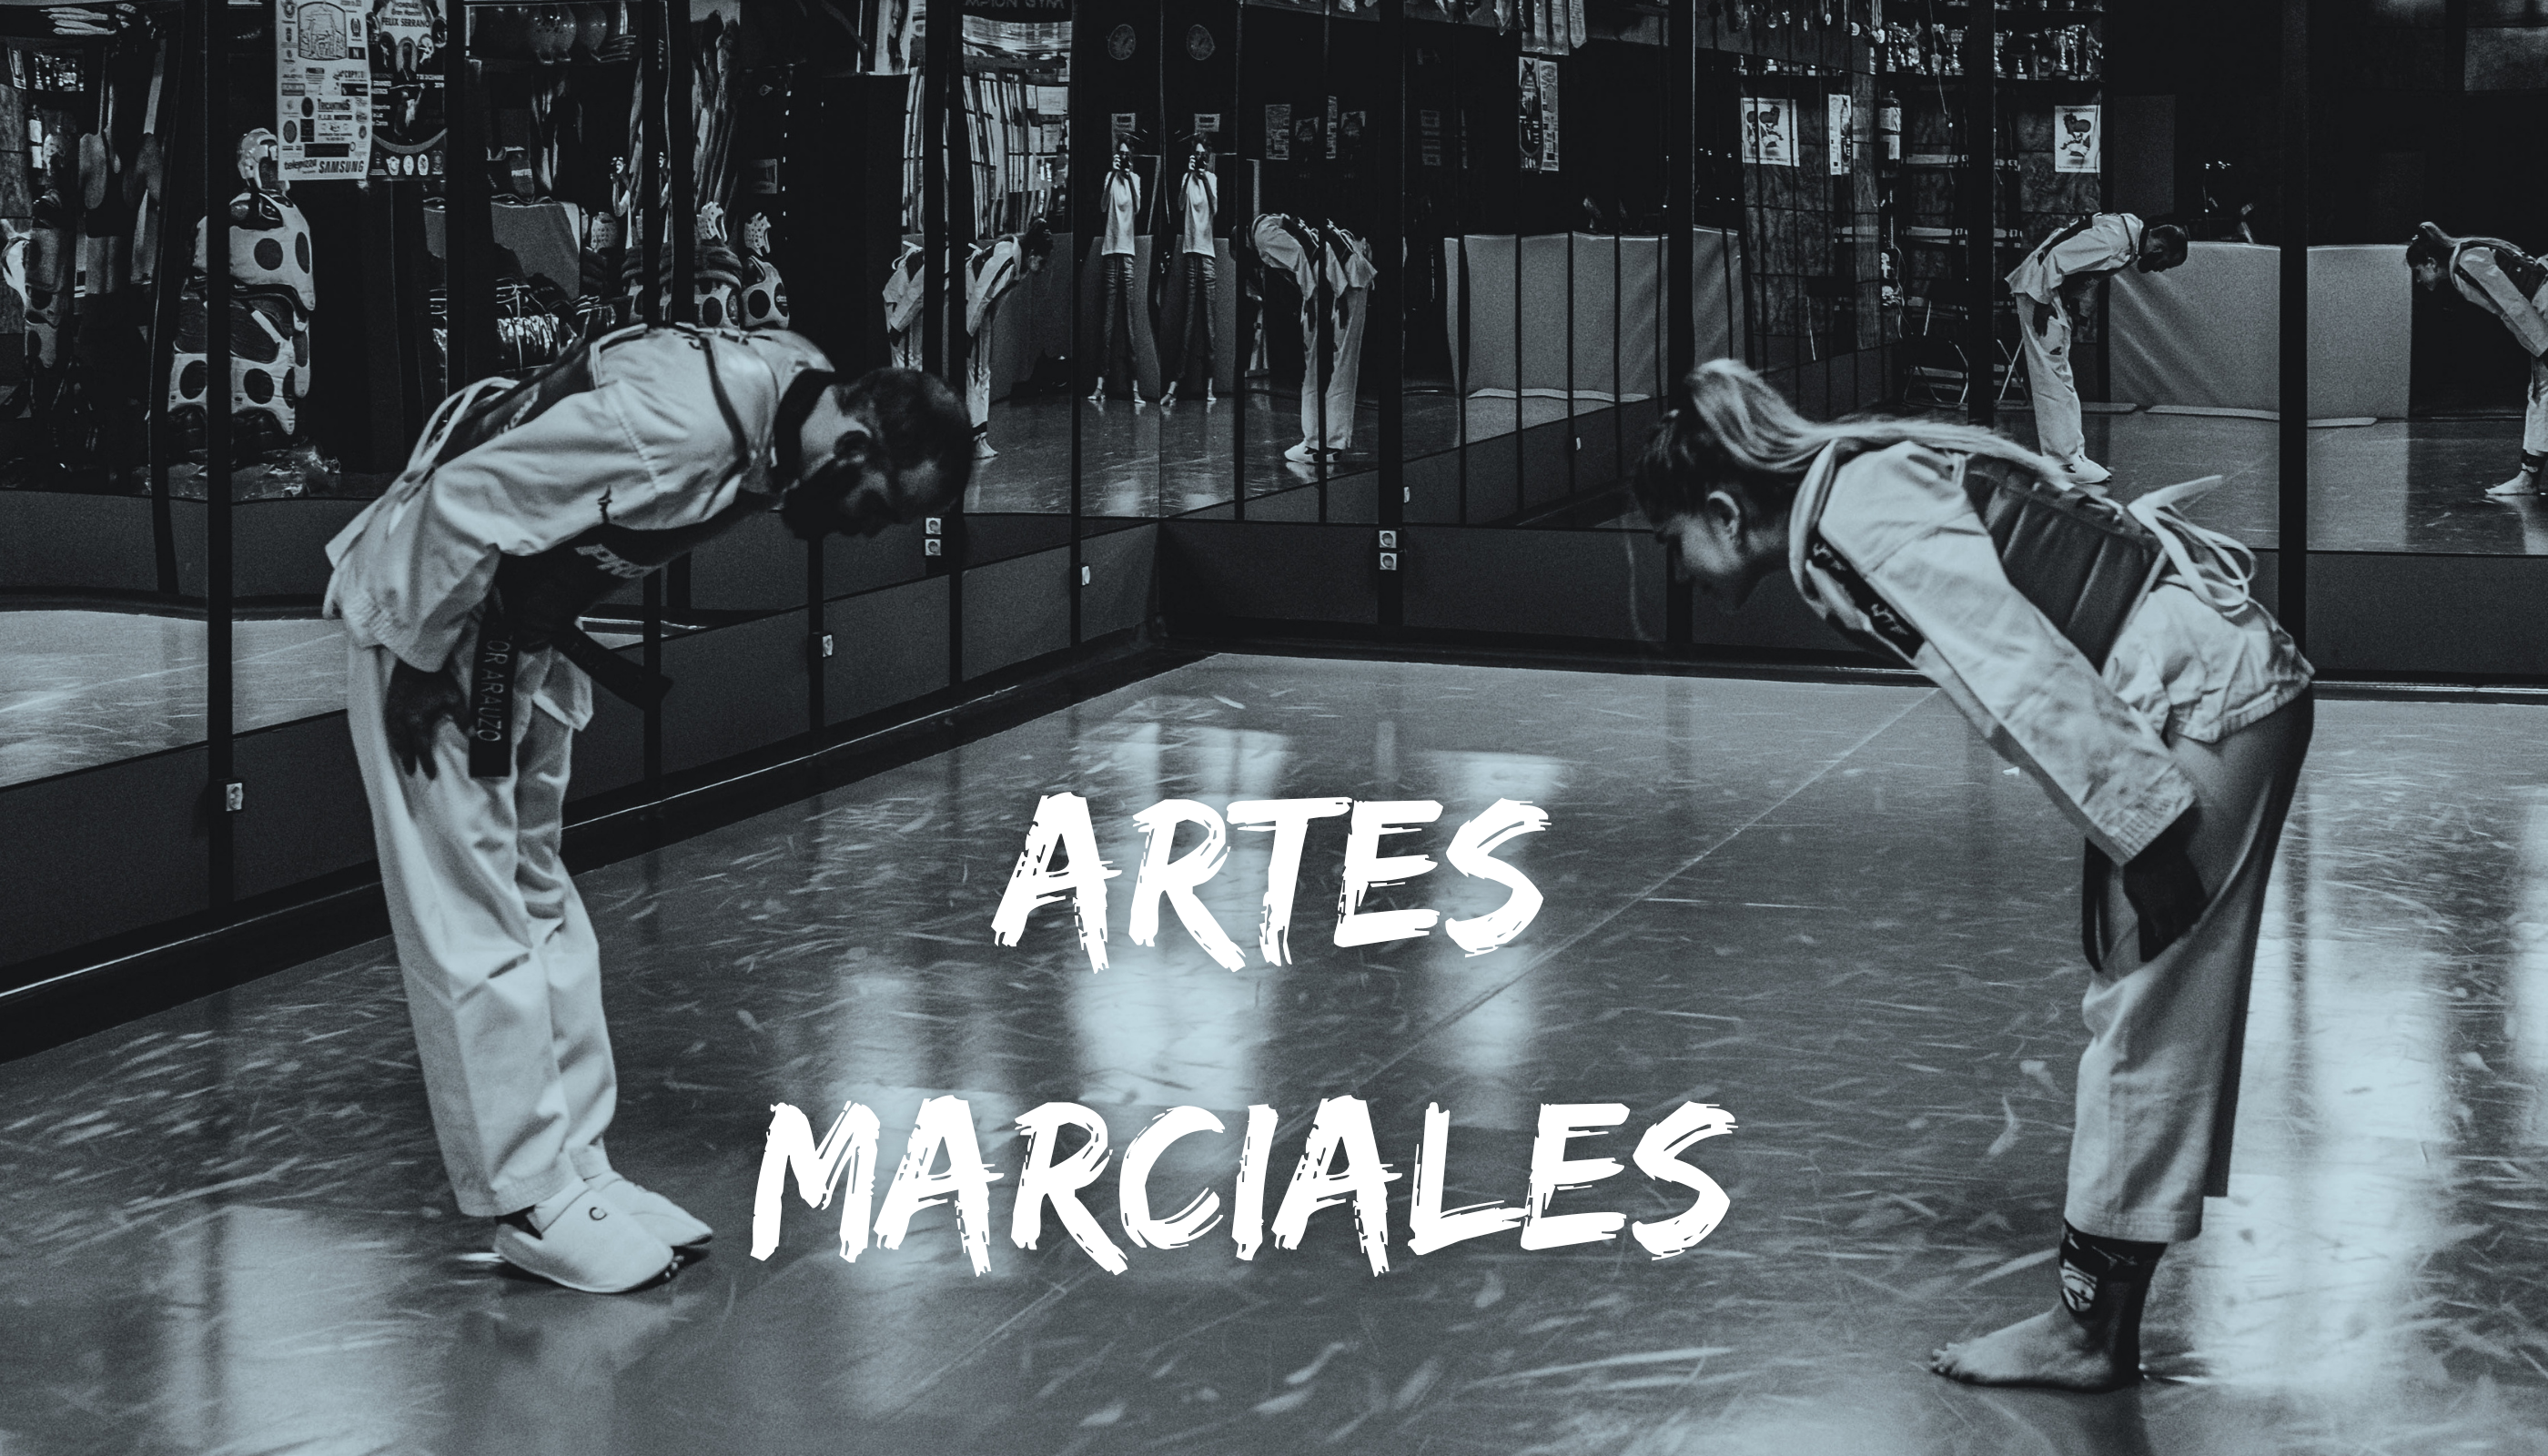 Artes marciales